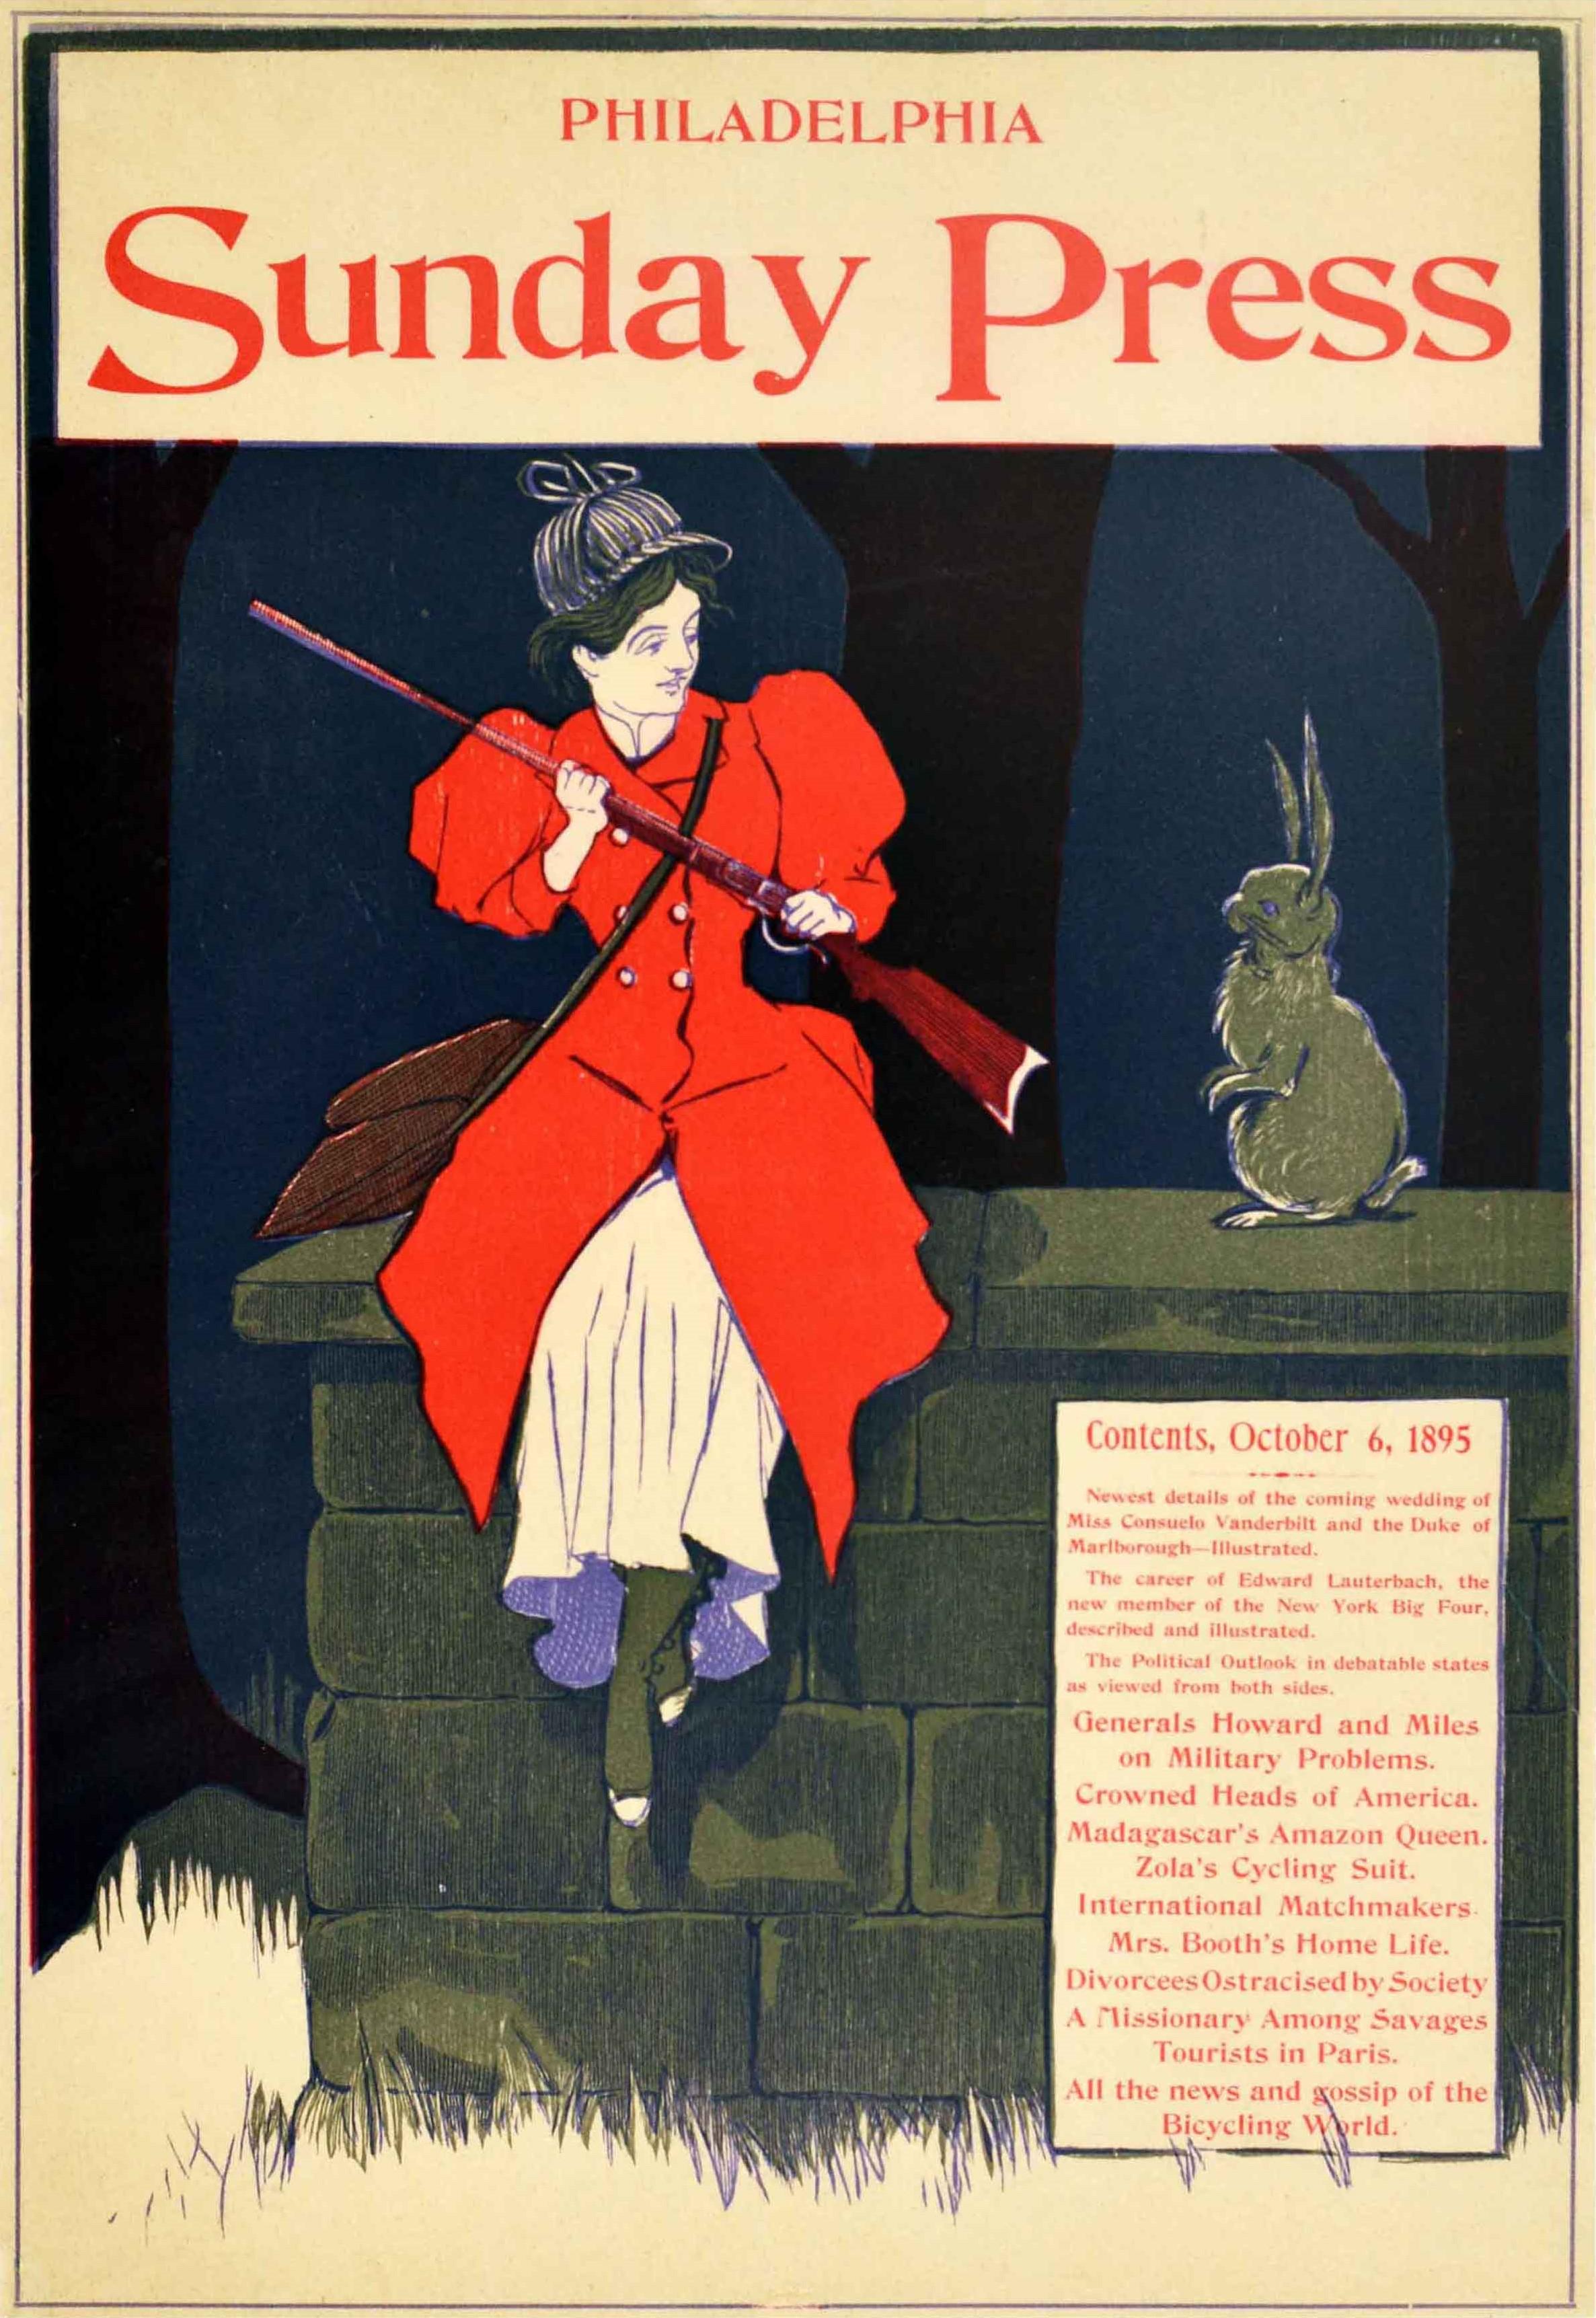 Affiche publicitaire ancienne originale pour l'édition du 6 octobre 1895 du journal Philadelphia Sunday Press (1857-1920) présentant une image colorée d'une dame en manteau de chasseur rouge, chapeau de cerf et sac sur l'épaule, tenant un fusil et